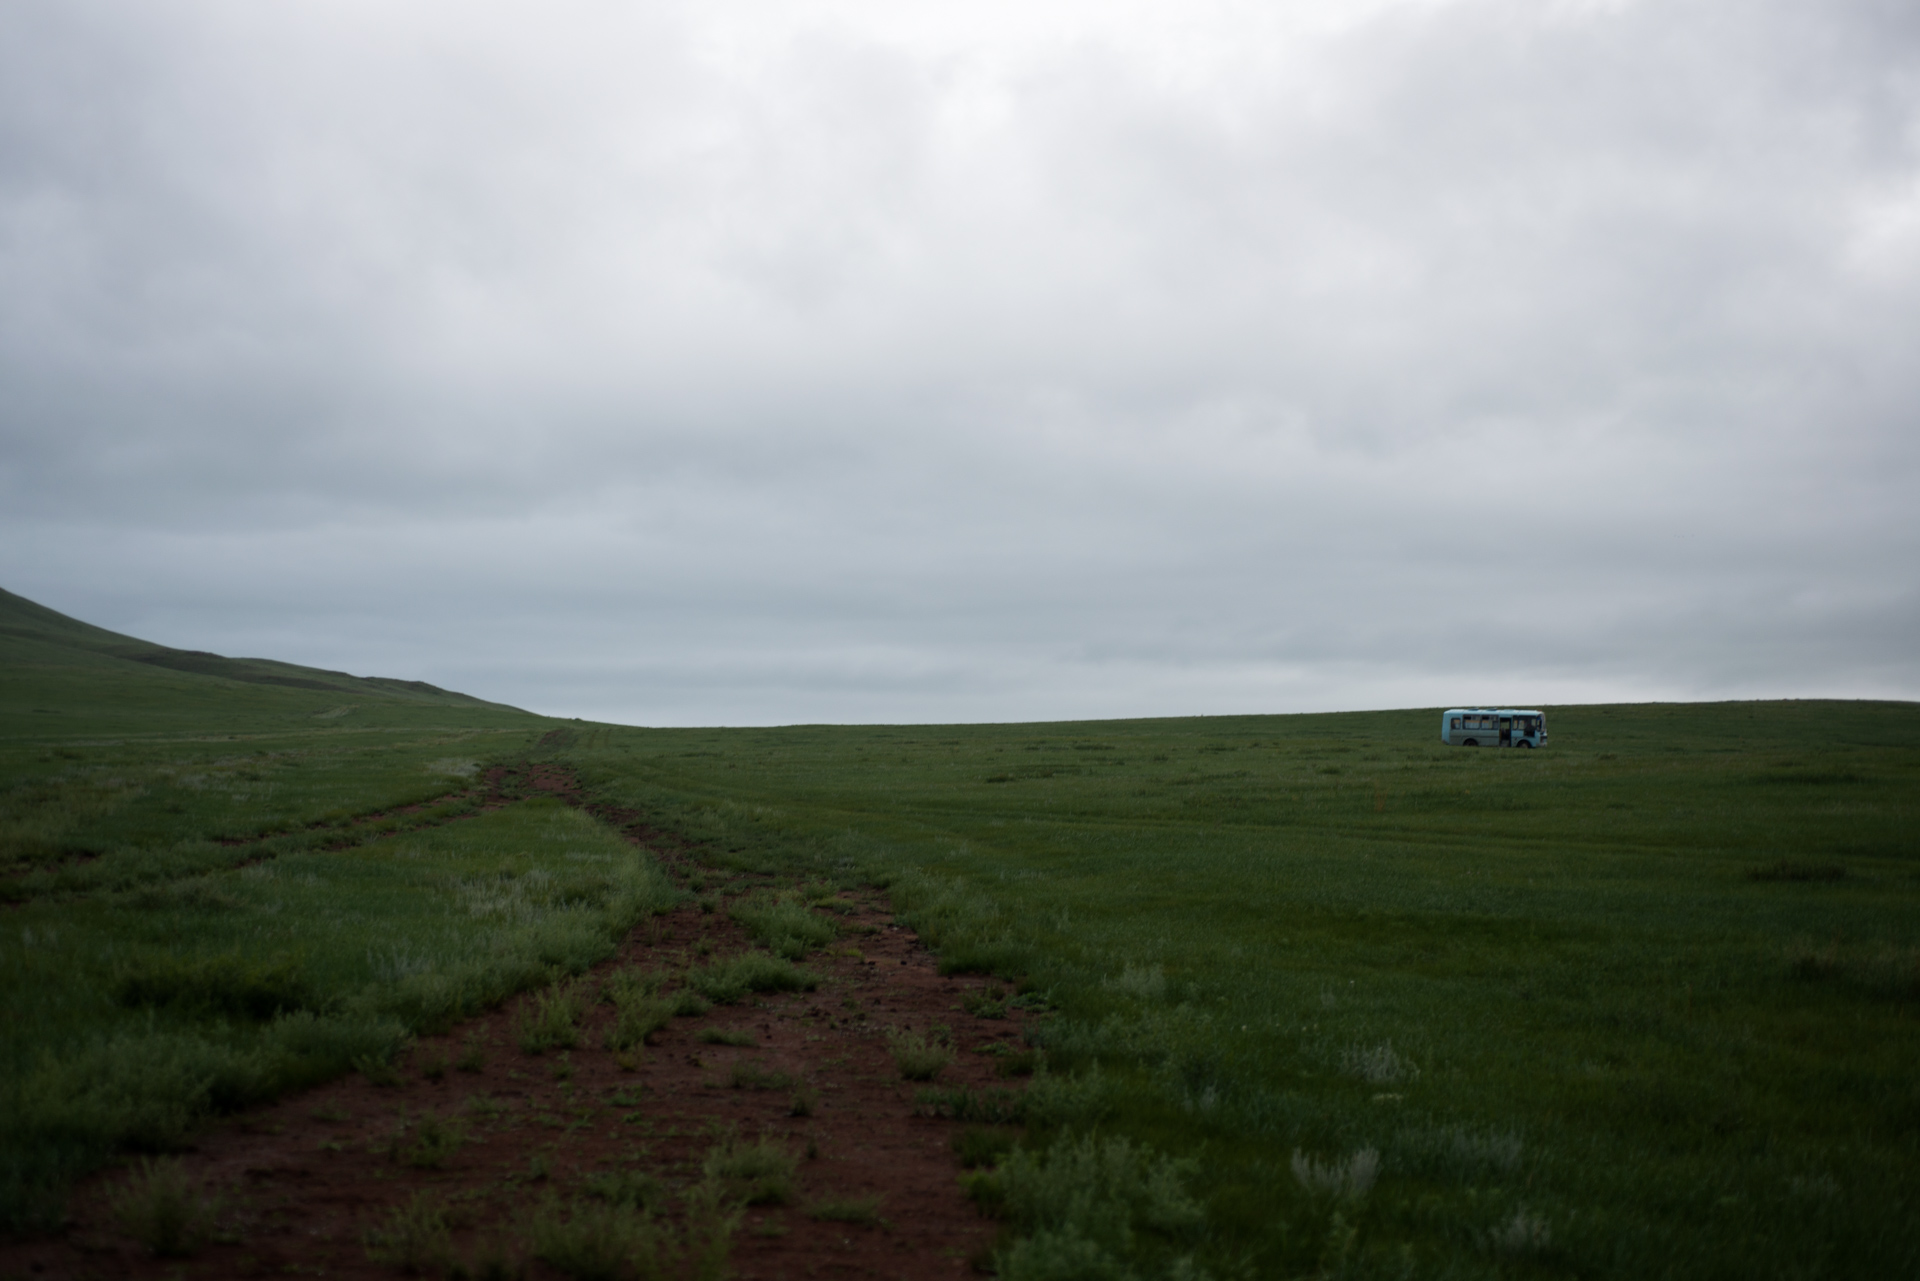 150801_378.jpg : 몽골 학습탐사 2진 사진 8월1일 ...자